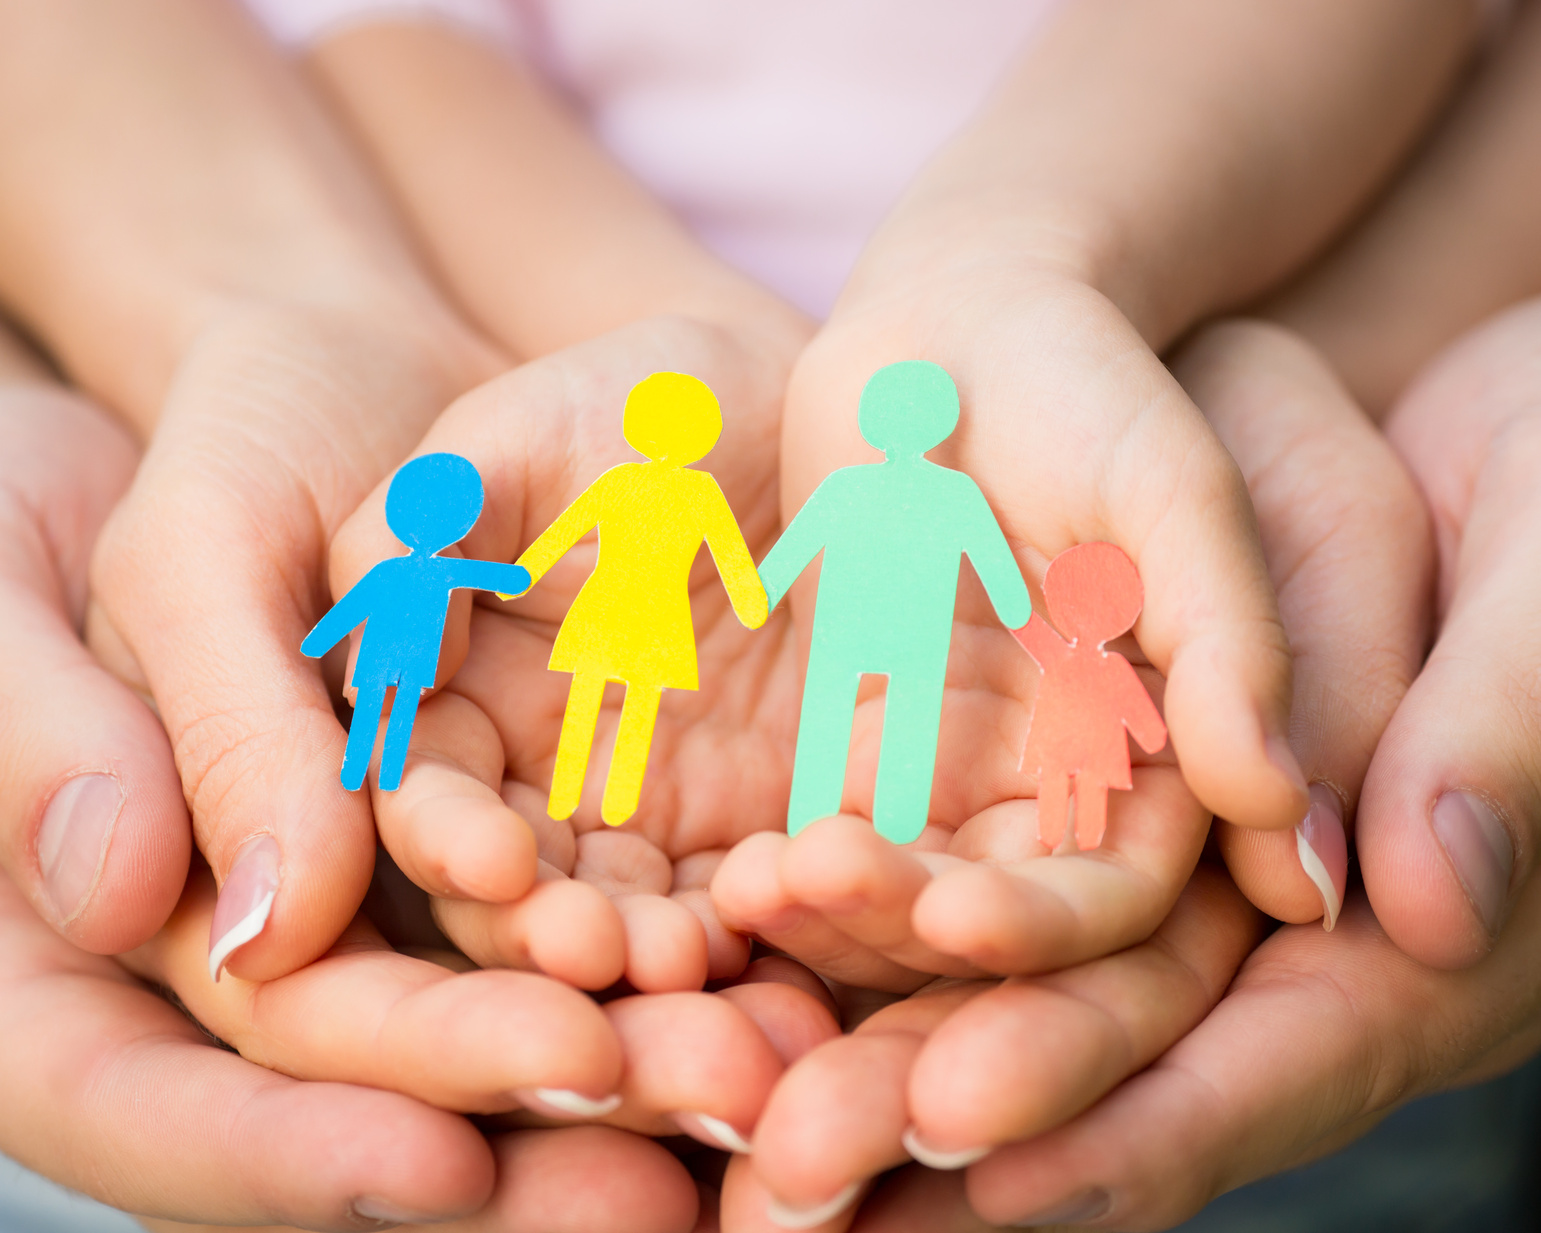 СПб ГБУ «Центр помощи семье и детям»  с 24 августа 2020 года возобновляет прием граждан, желающих принять на воспитание в семью ребенка, оставшегося без попечения родителей.